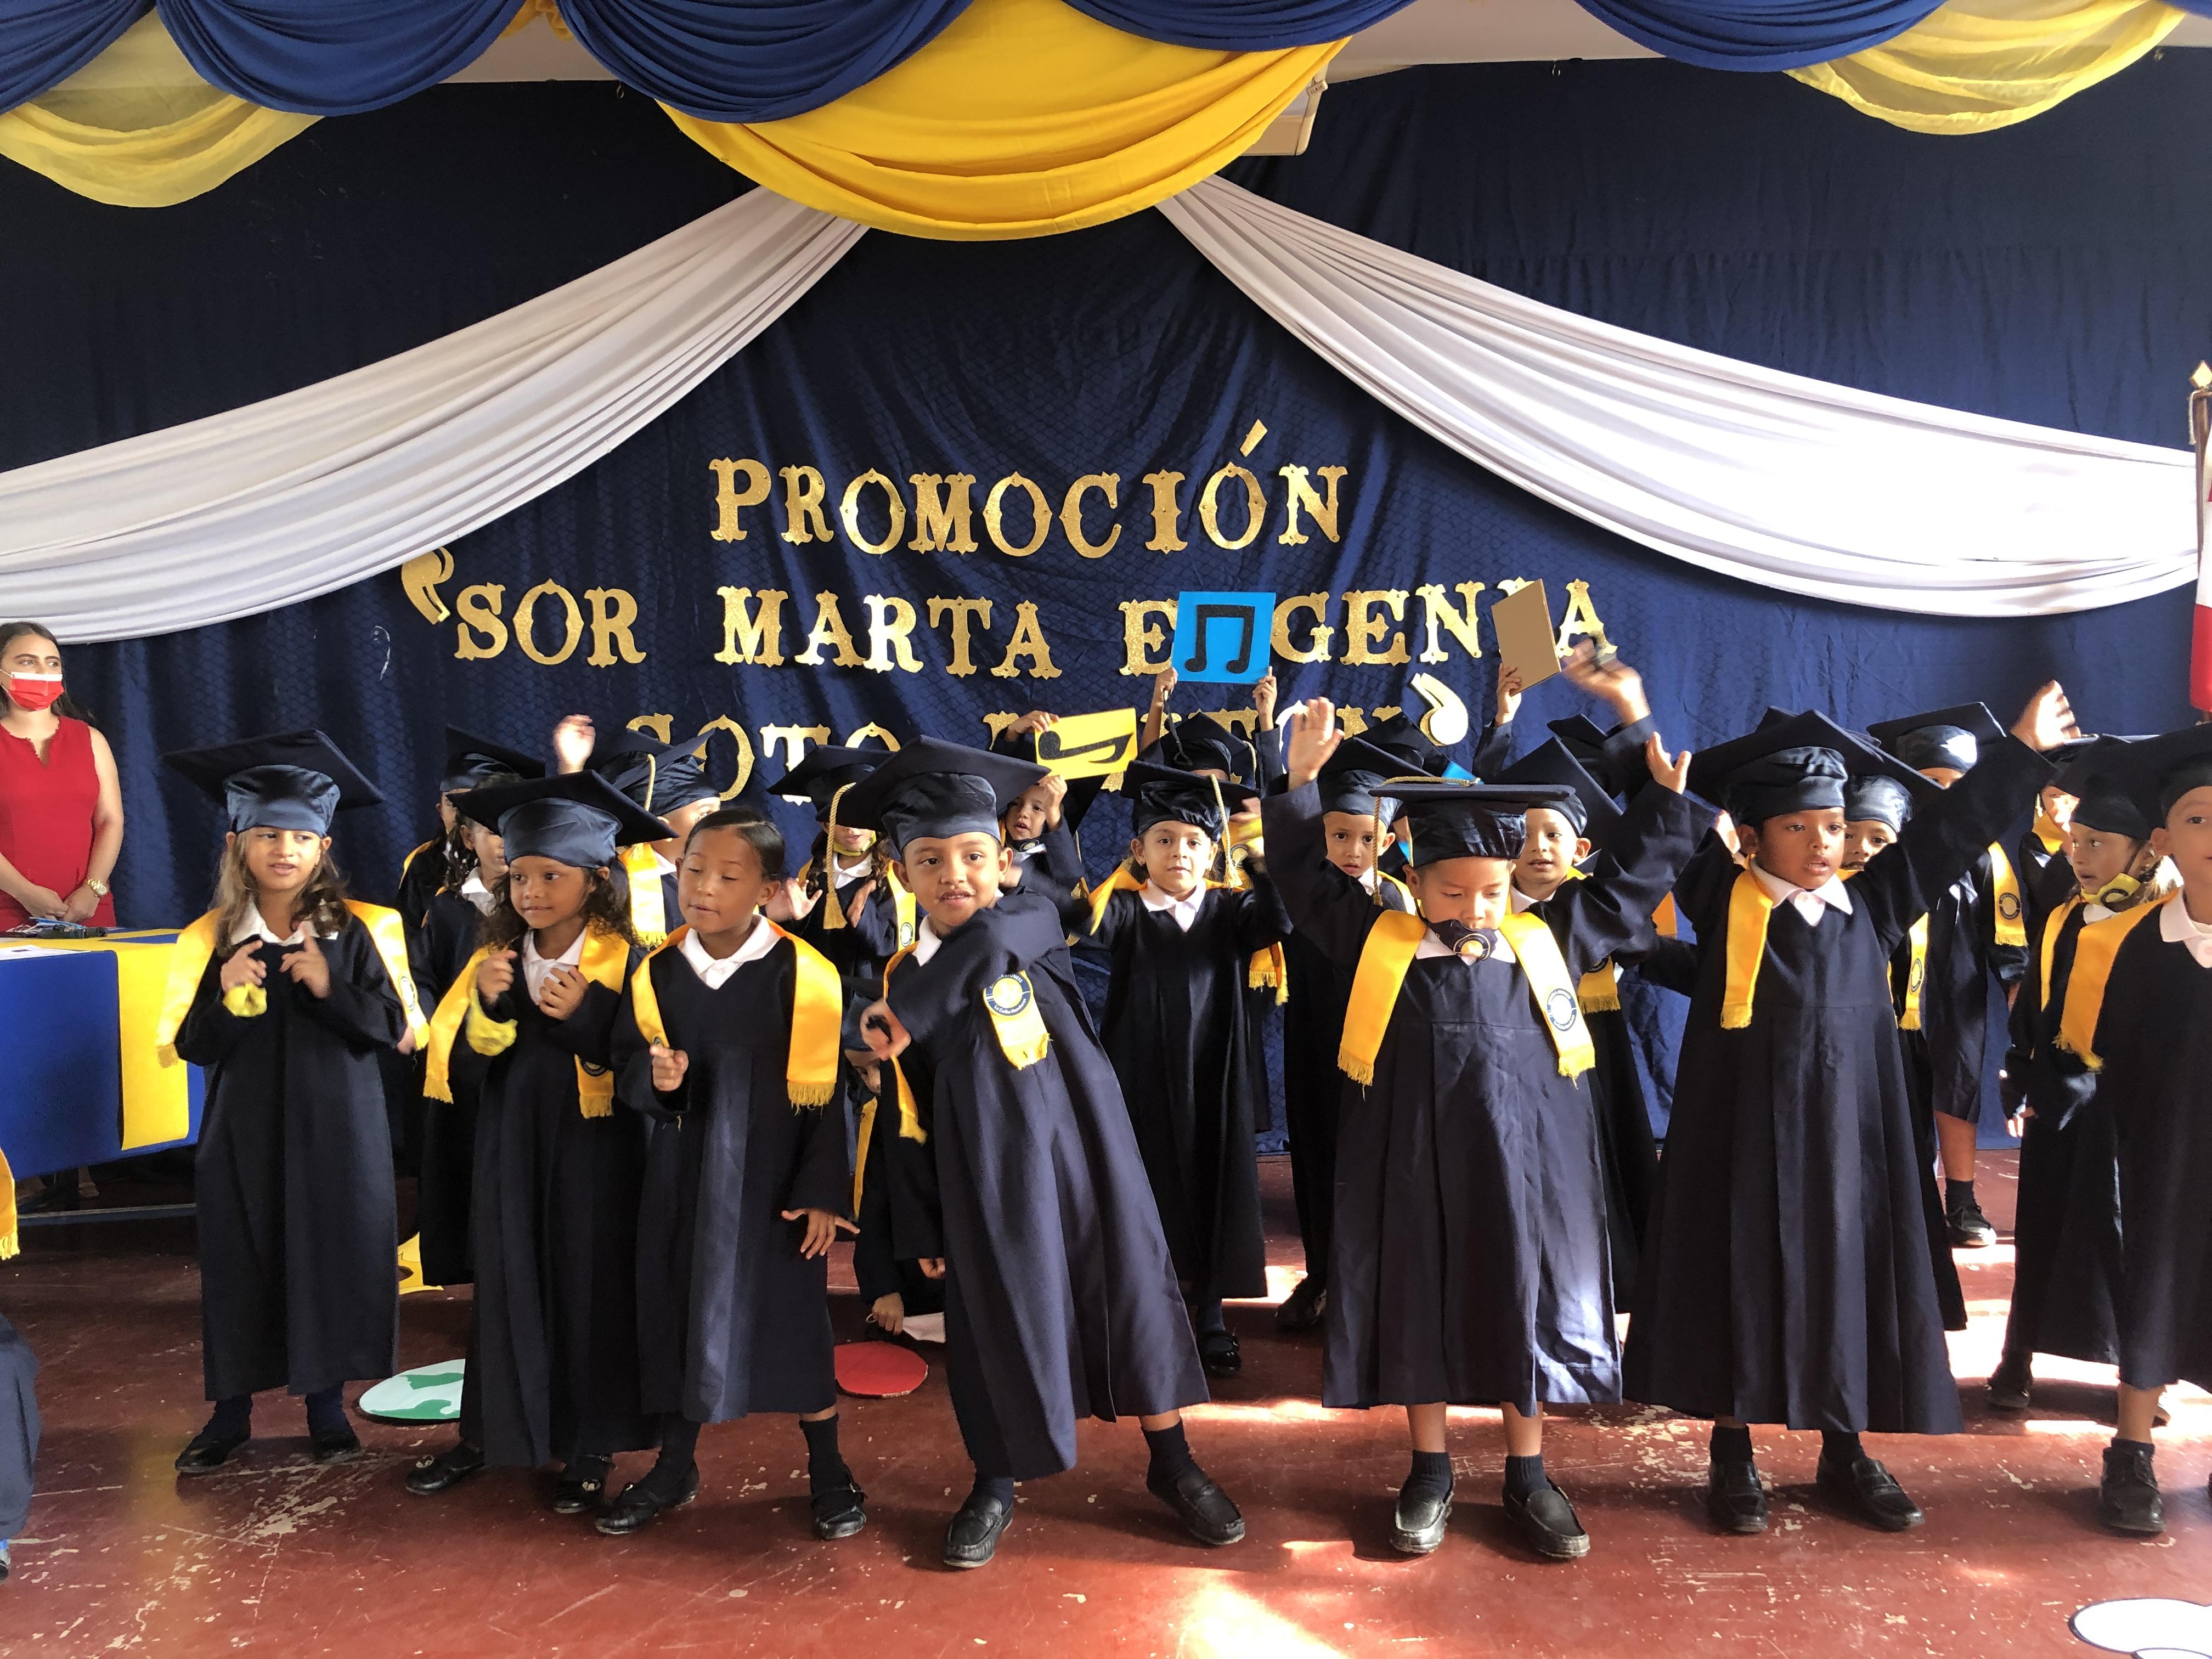 Ein historischer Moment: Die erste Klasse der CFF Escuela in Honduras macht ihren Abschluss!